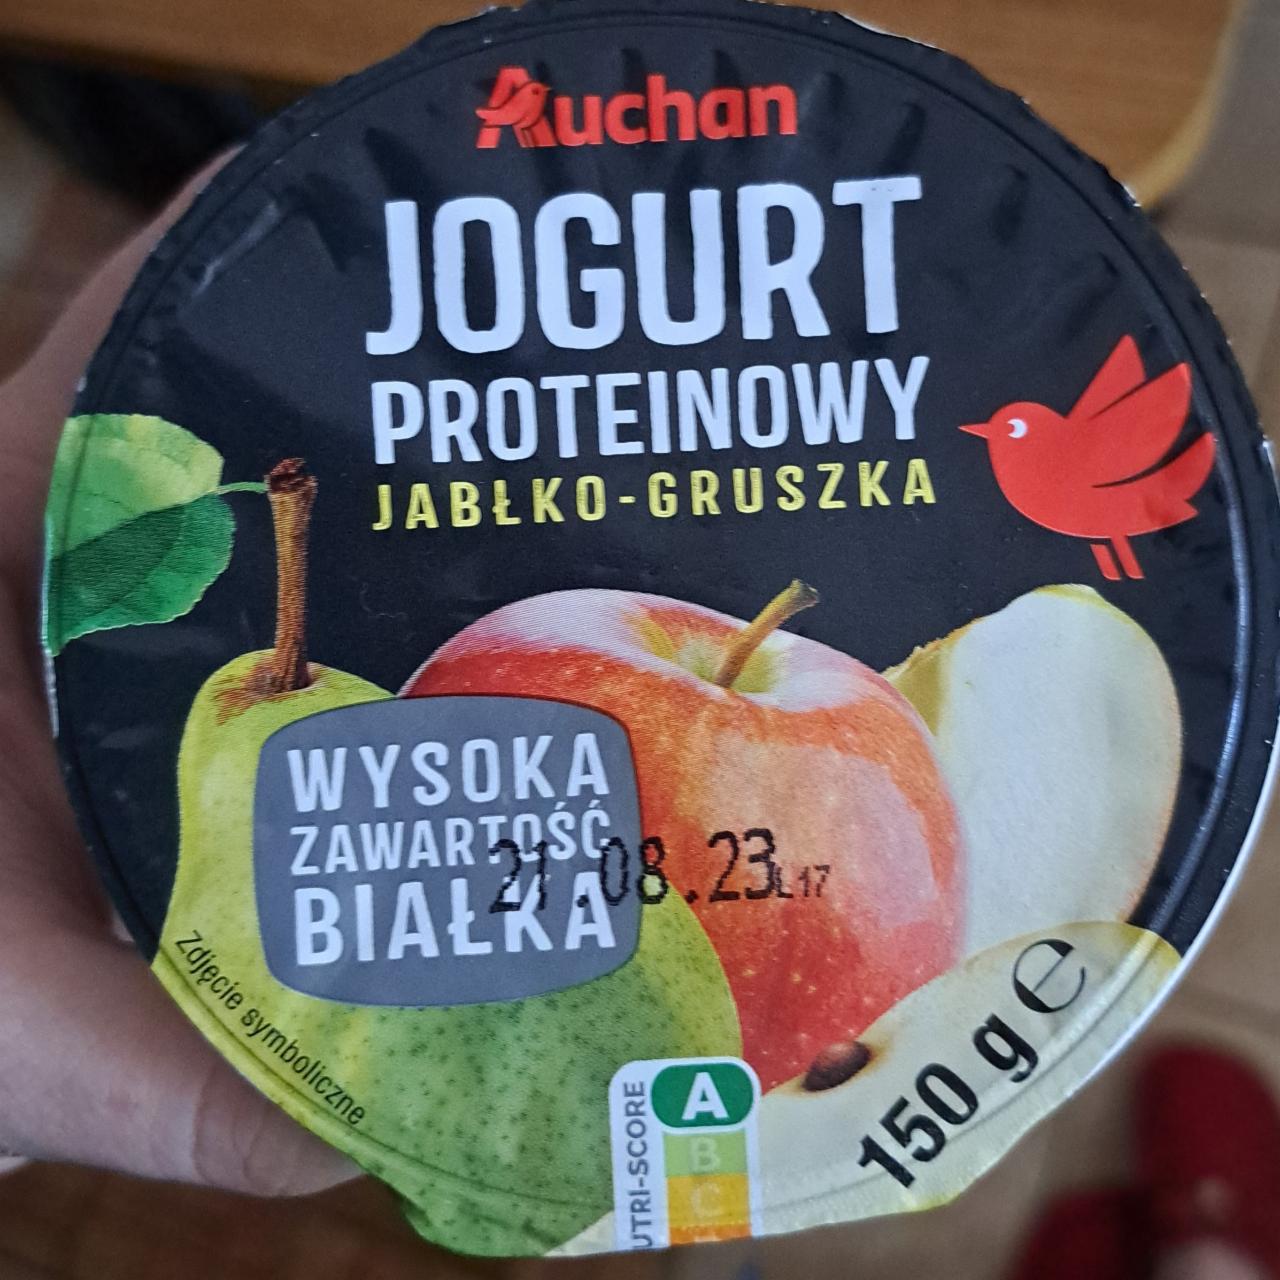 Fotografie - Jogurt proteinowy jabłko - gruszka Auchan